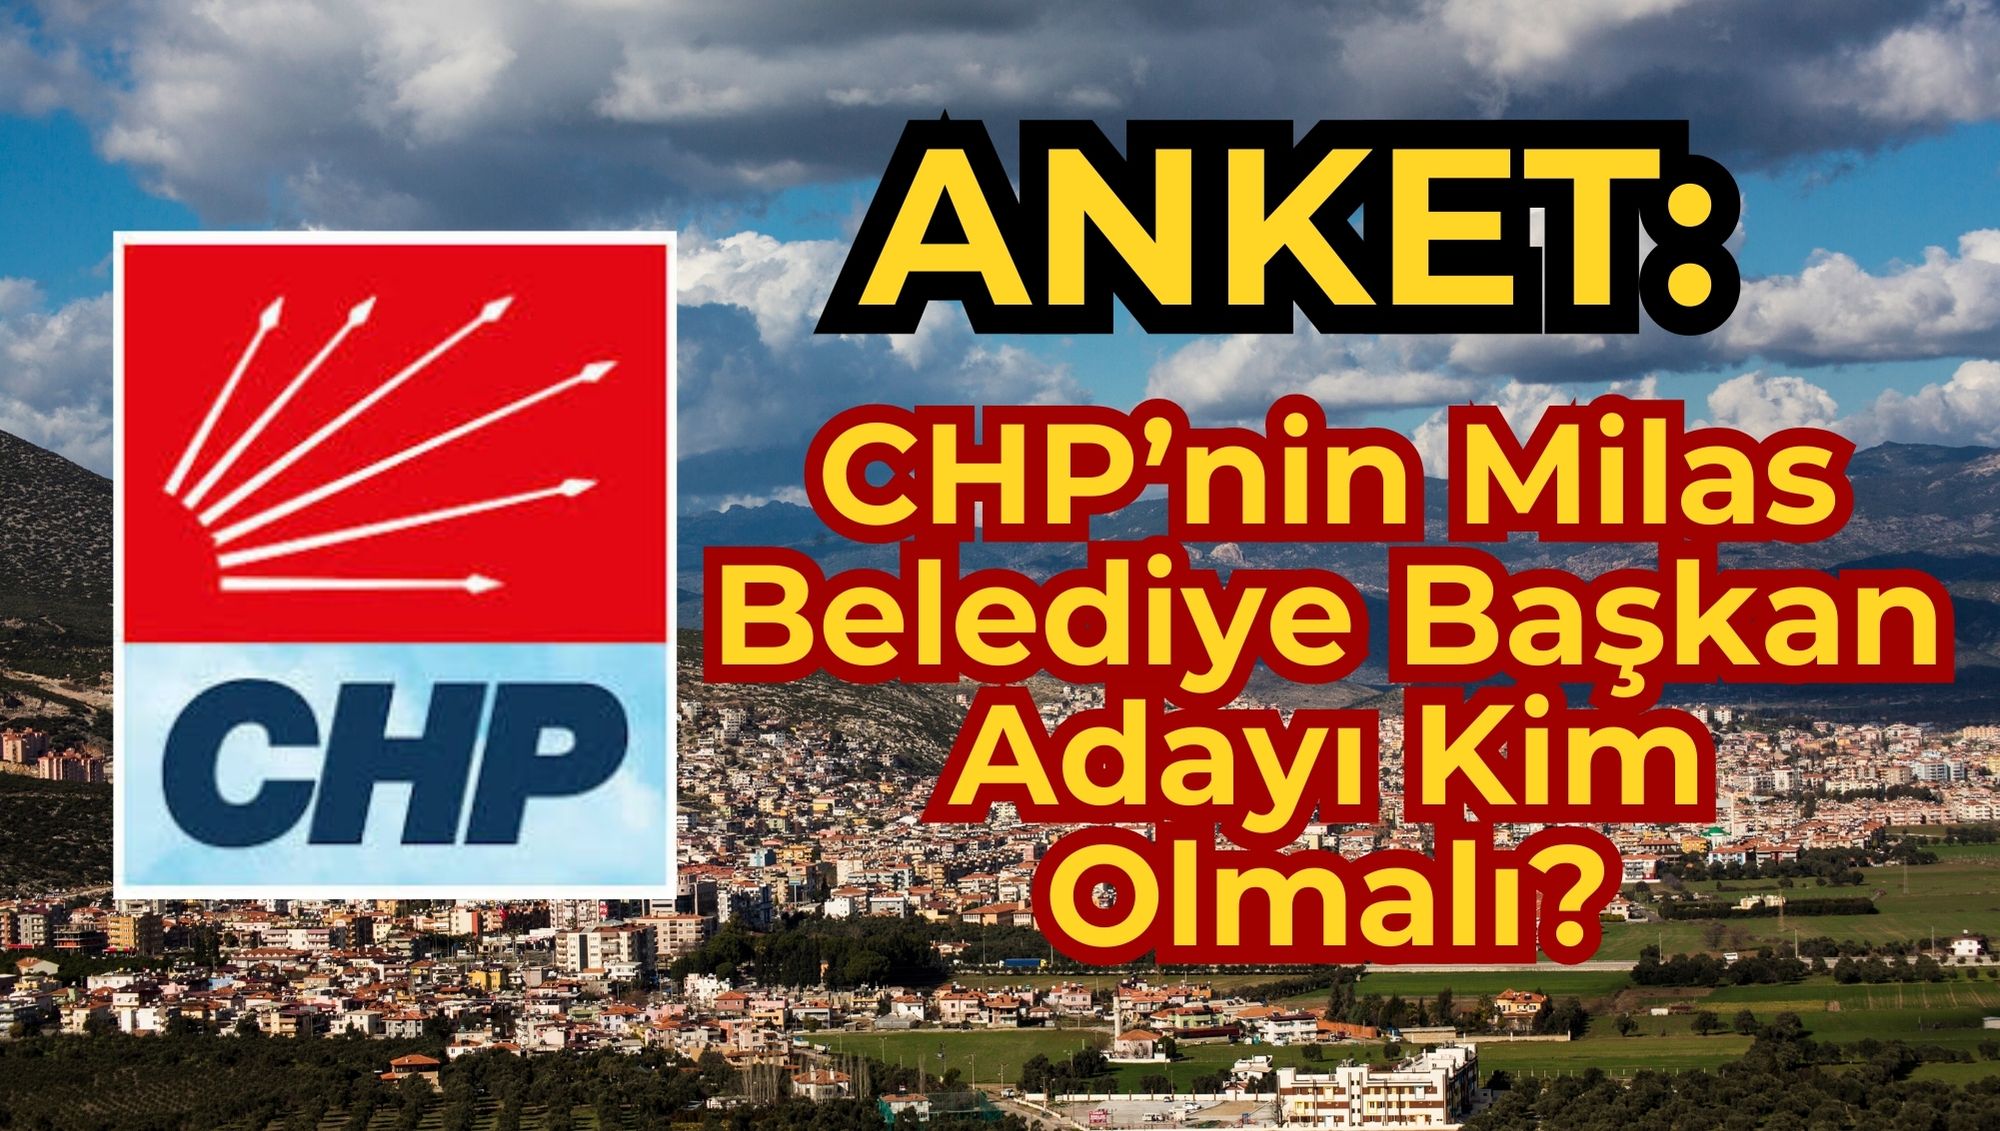 CHP’nin Milas Belediye Başkan Adayı Kim Olmalı?